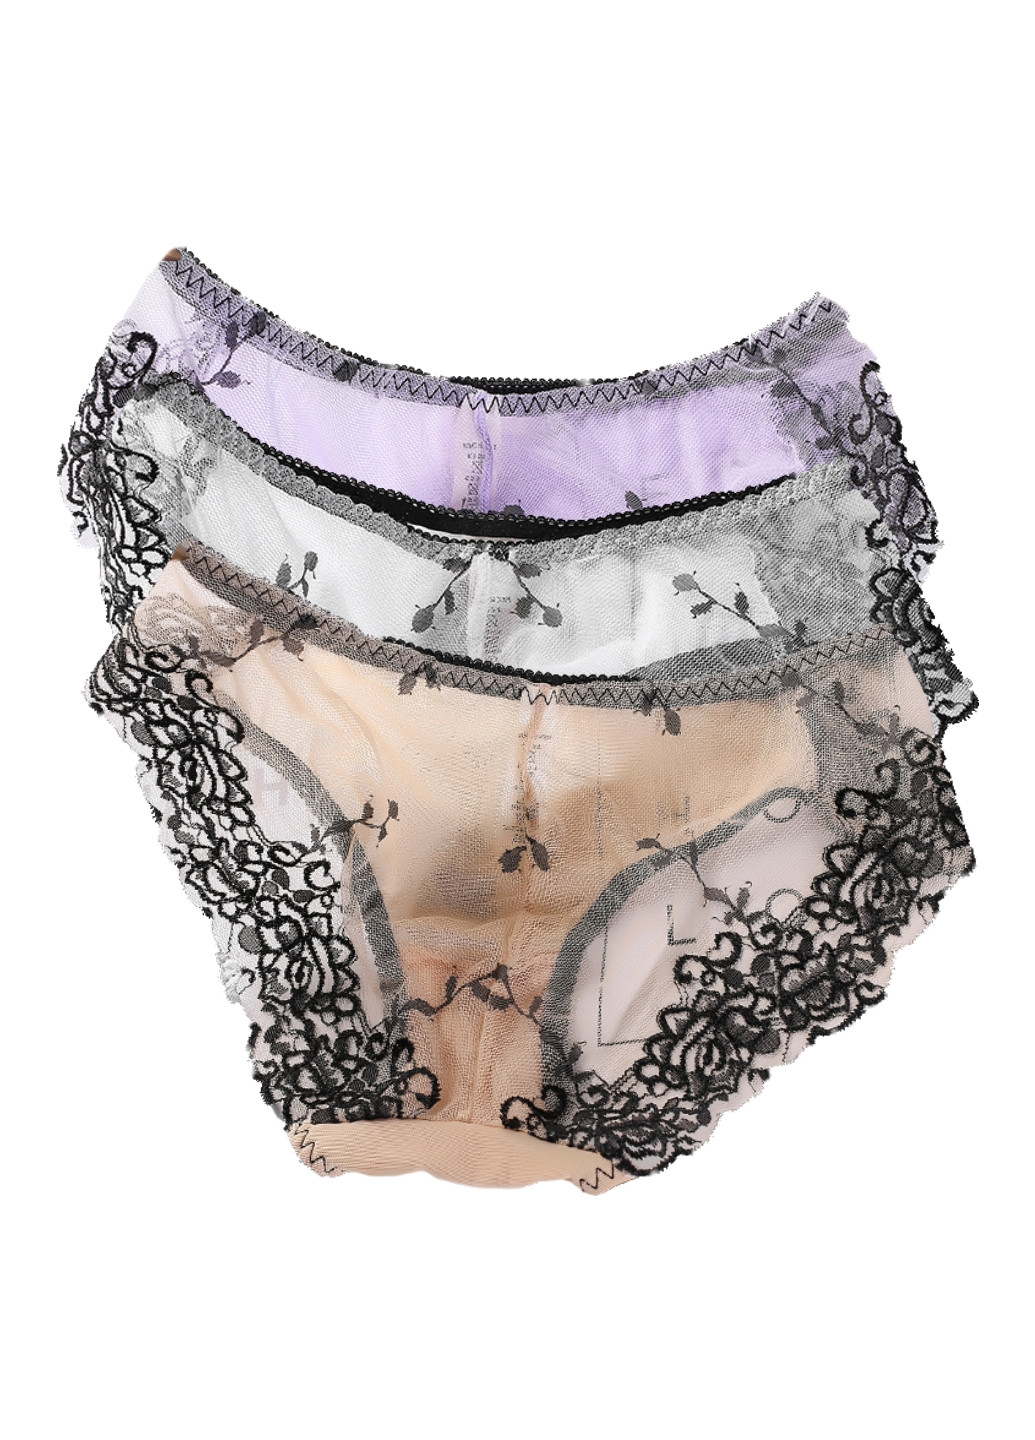 Трусики (3шт.) Woman Underwear слип однотонные комбинированные повседневные